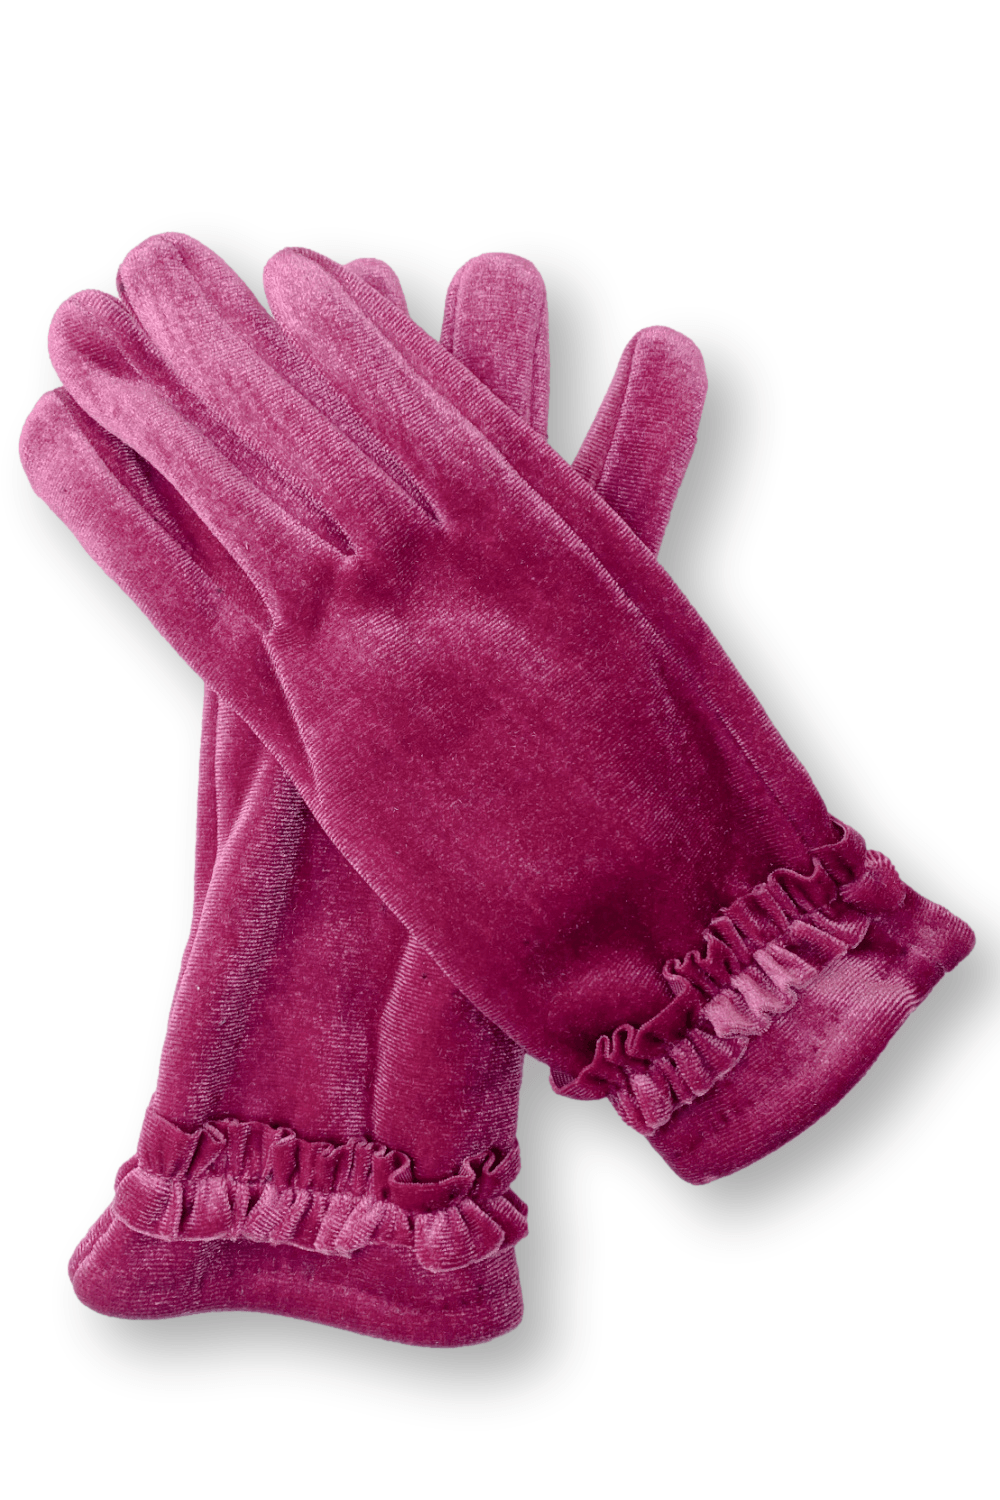 Fuchsia Feminine velvet women's gloves with small wrist ruffle.